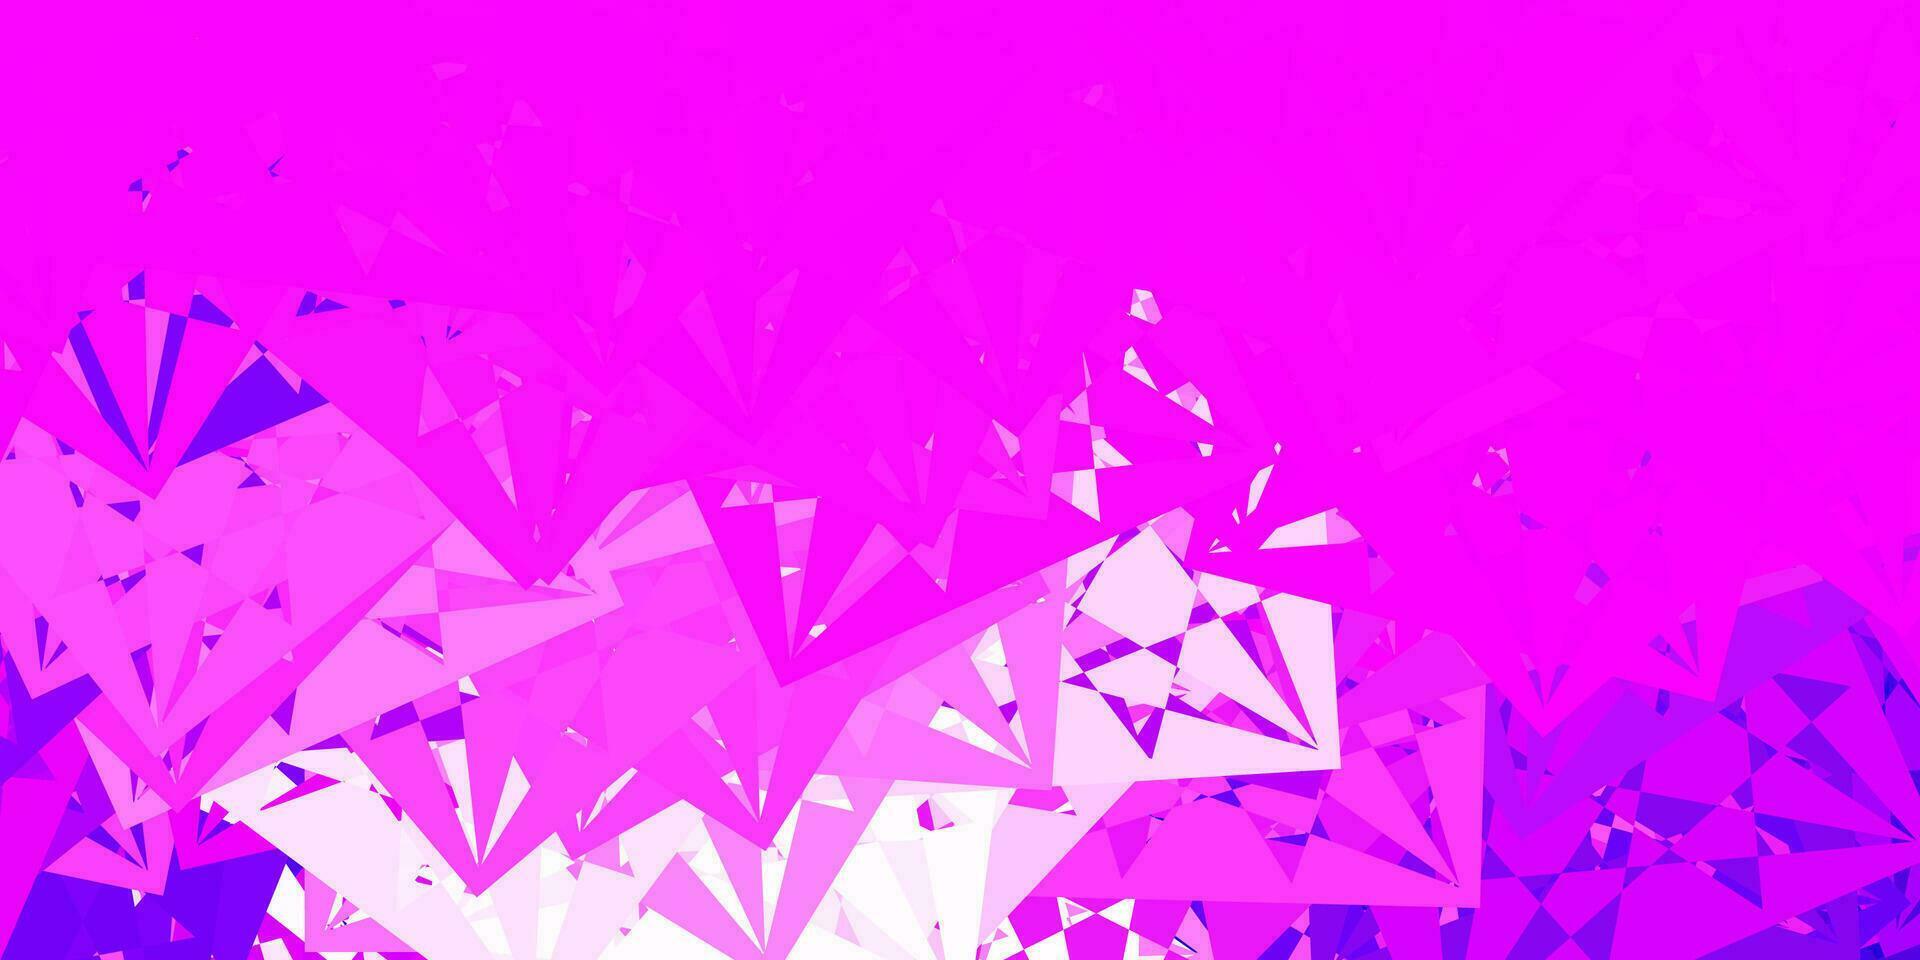 ljuslila, rosa vektormönster med månghörniga former. vektor